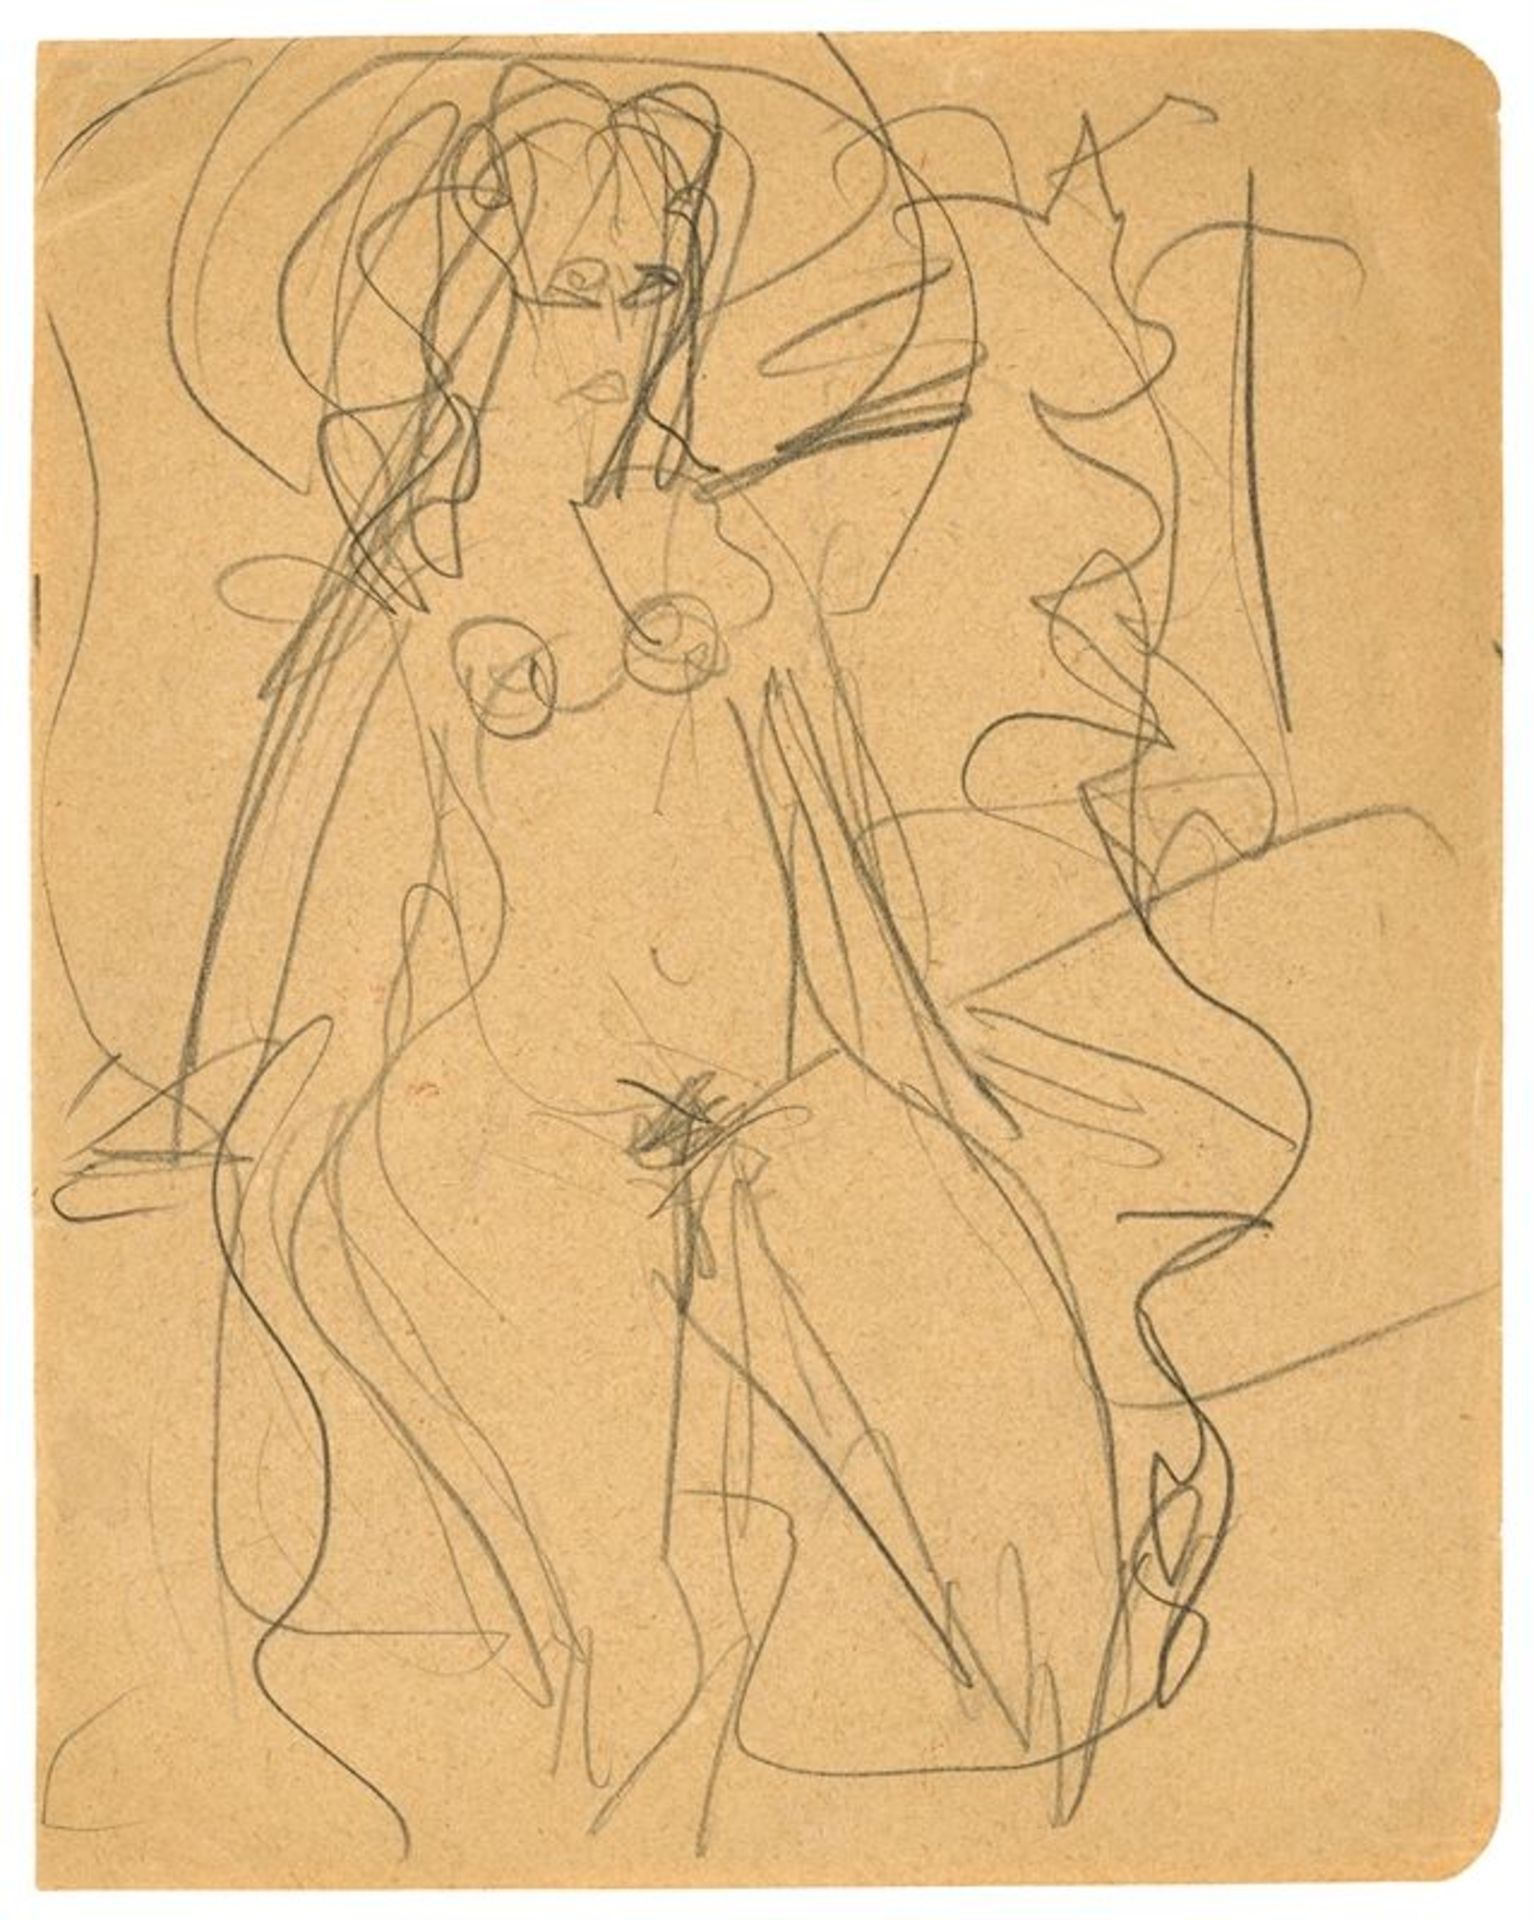 Ernst Ludwig Kirchner (Aschaffenburg 1880 – 1938 Davos)Auf dem Bett sitzendes Mädchen. 1915Bleistift